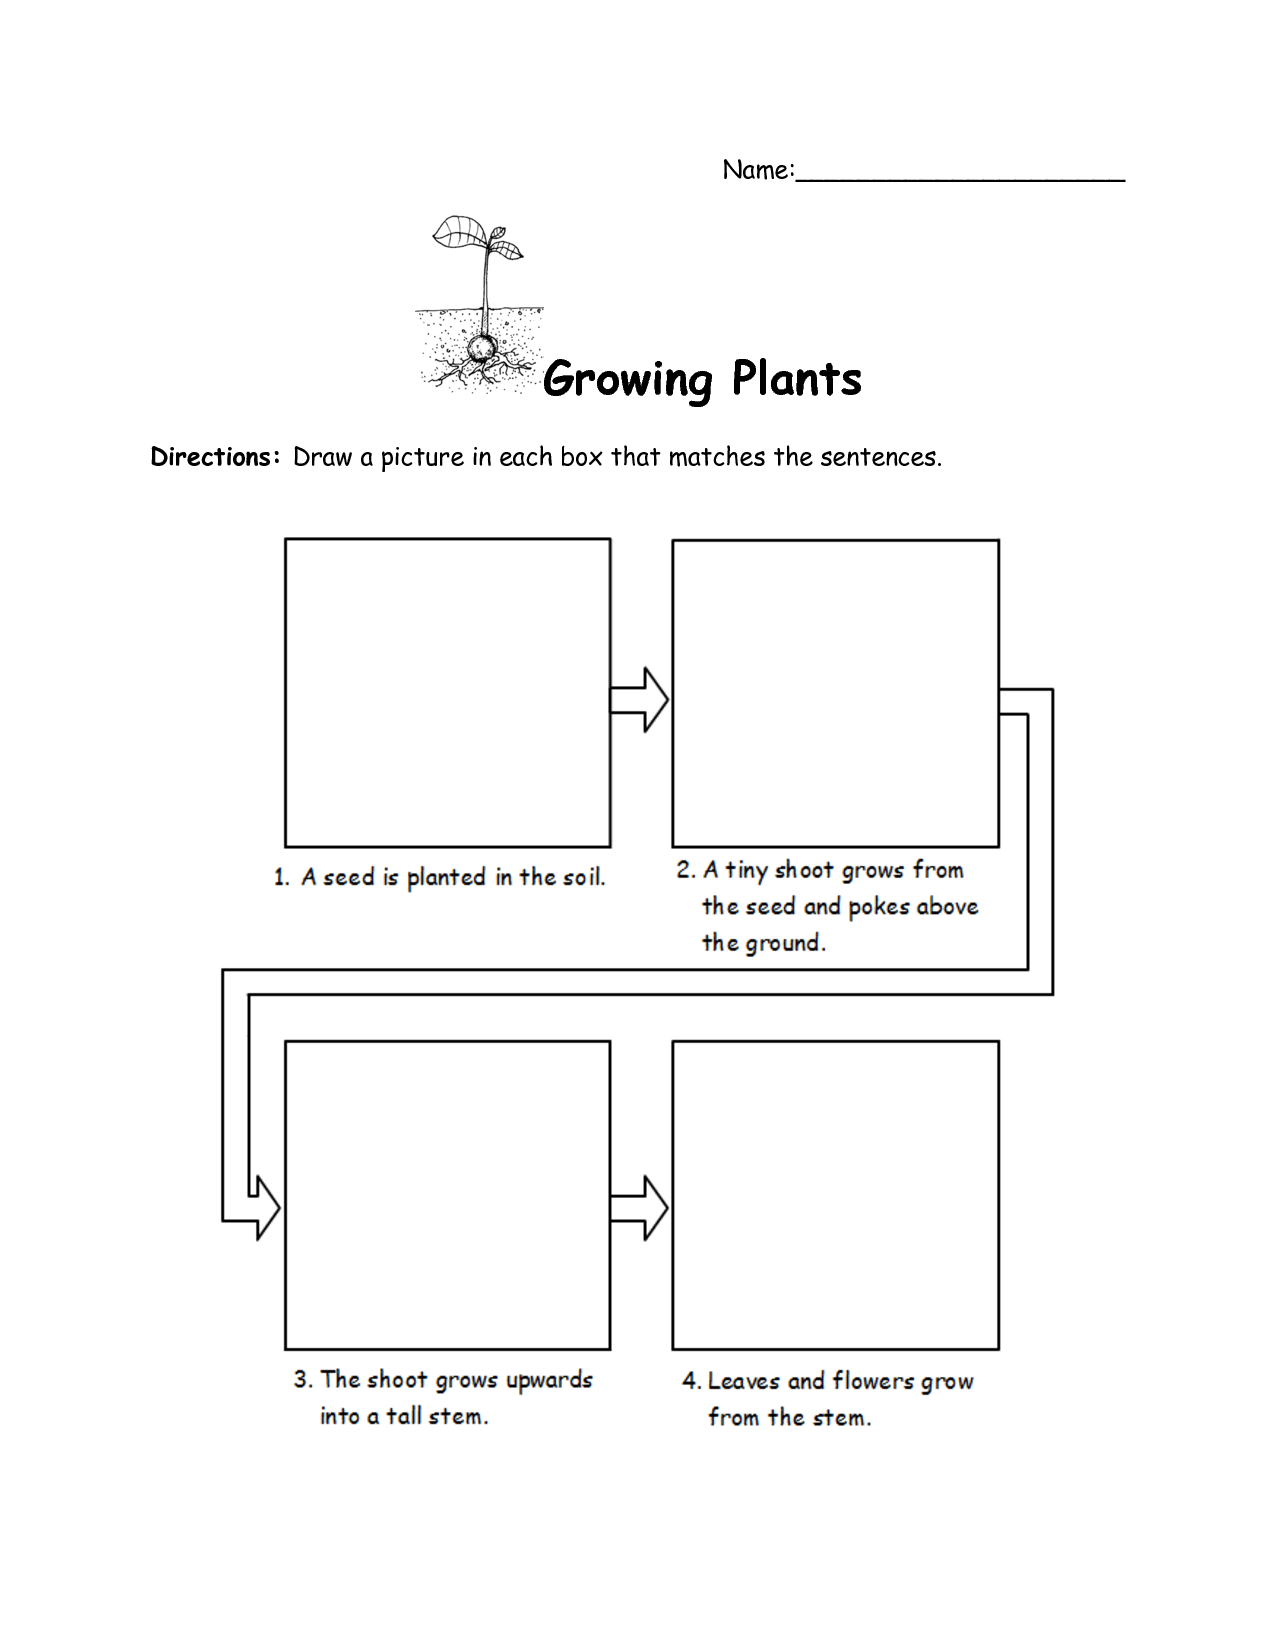 Growing Plants Worksheet Image